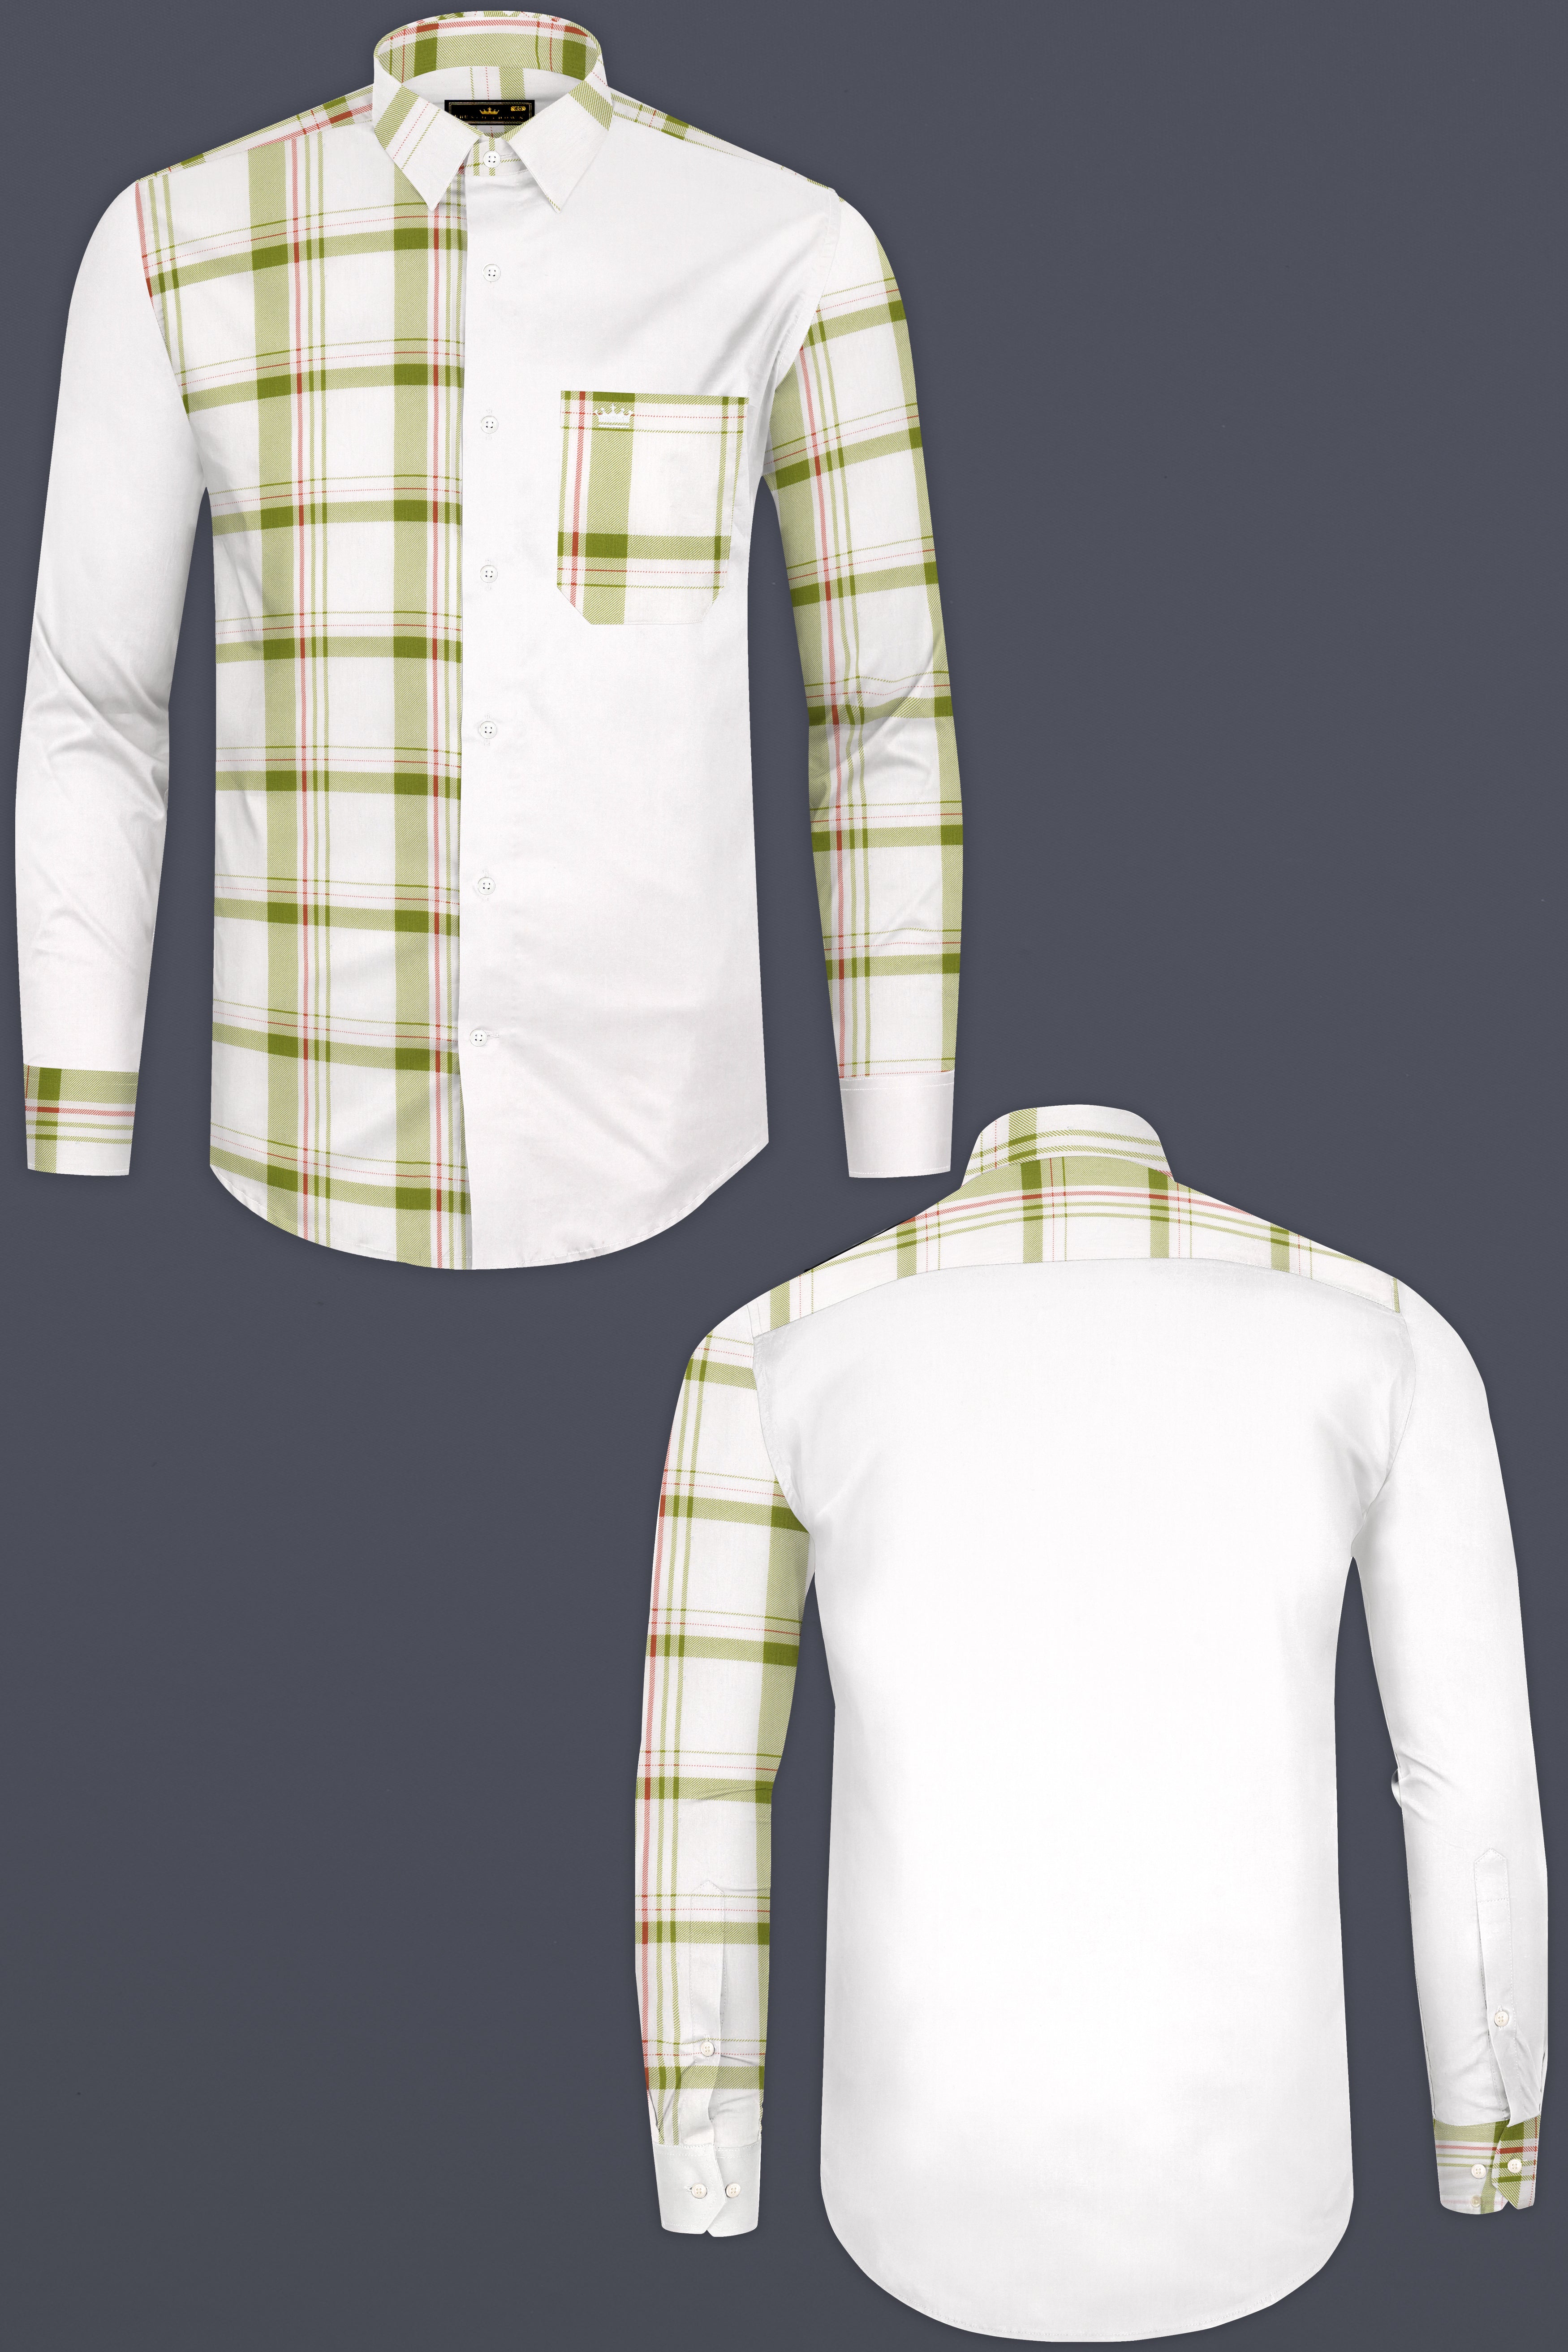 Half White Half Checkered Super Soft Premium Cotton Designer Shirt